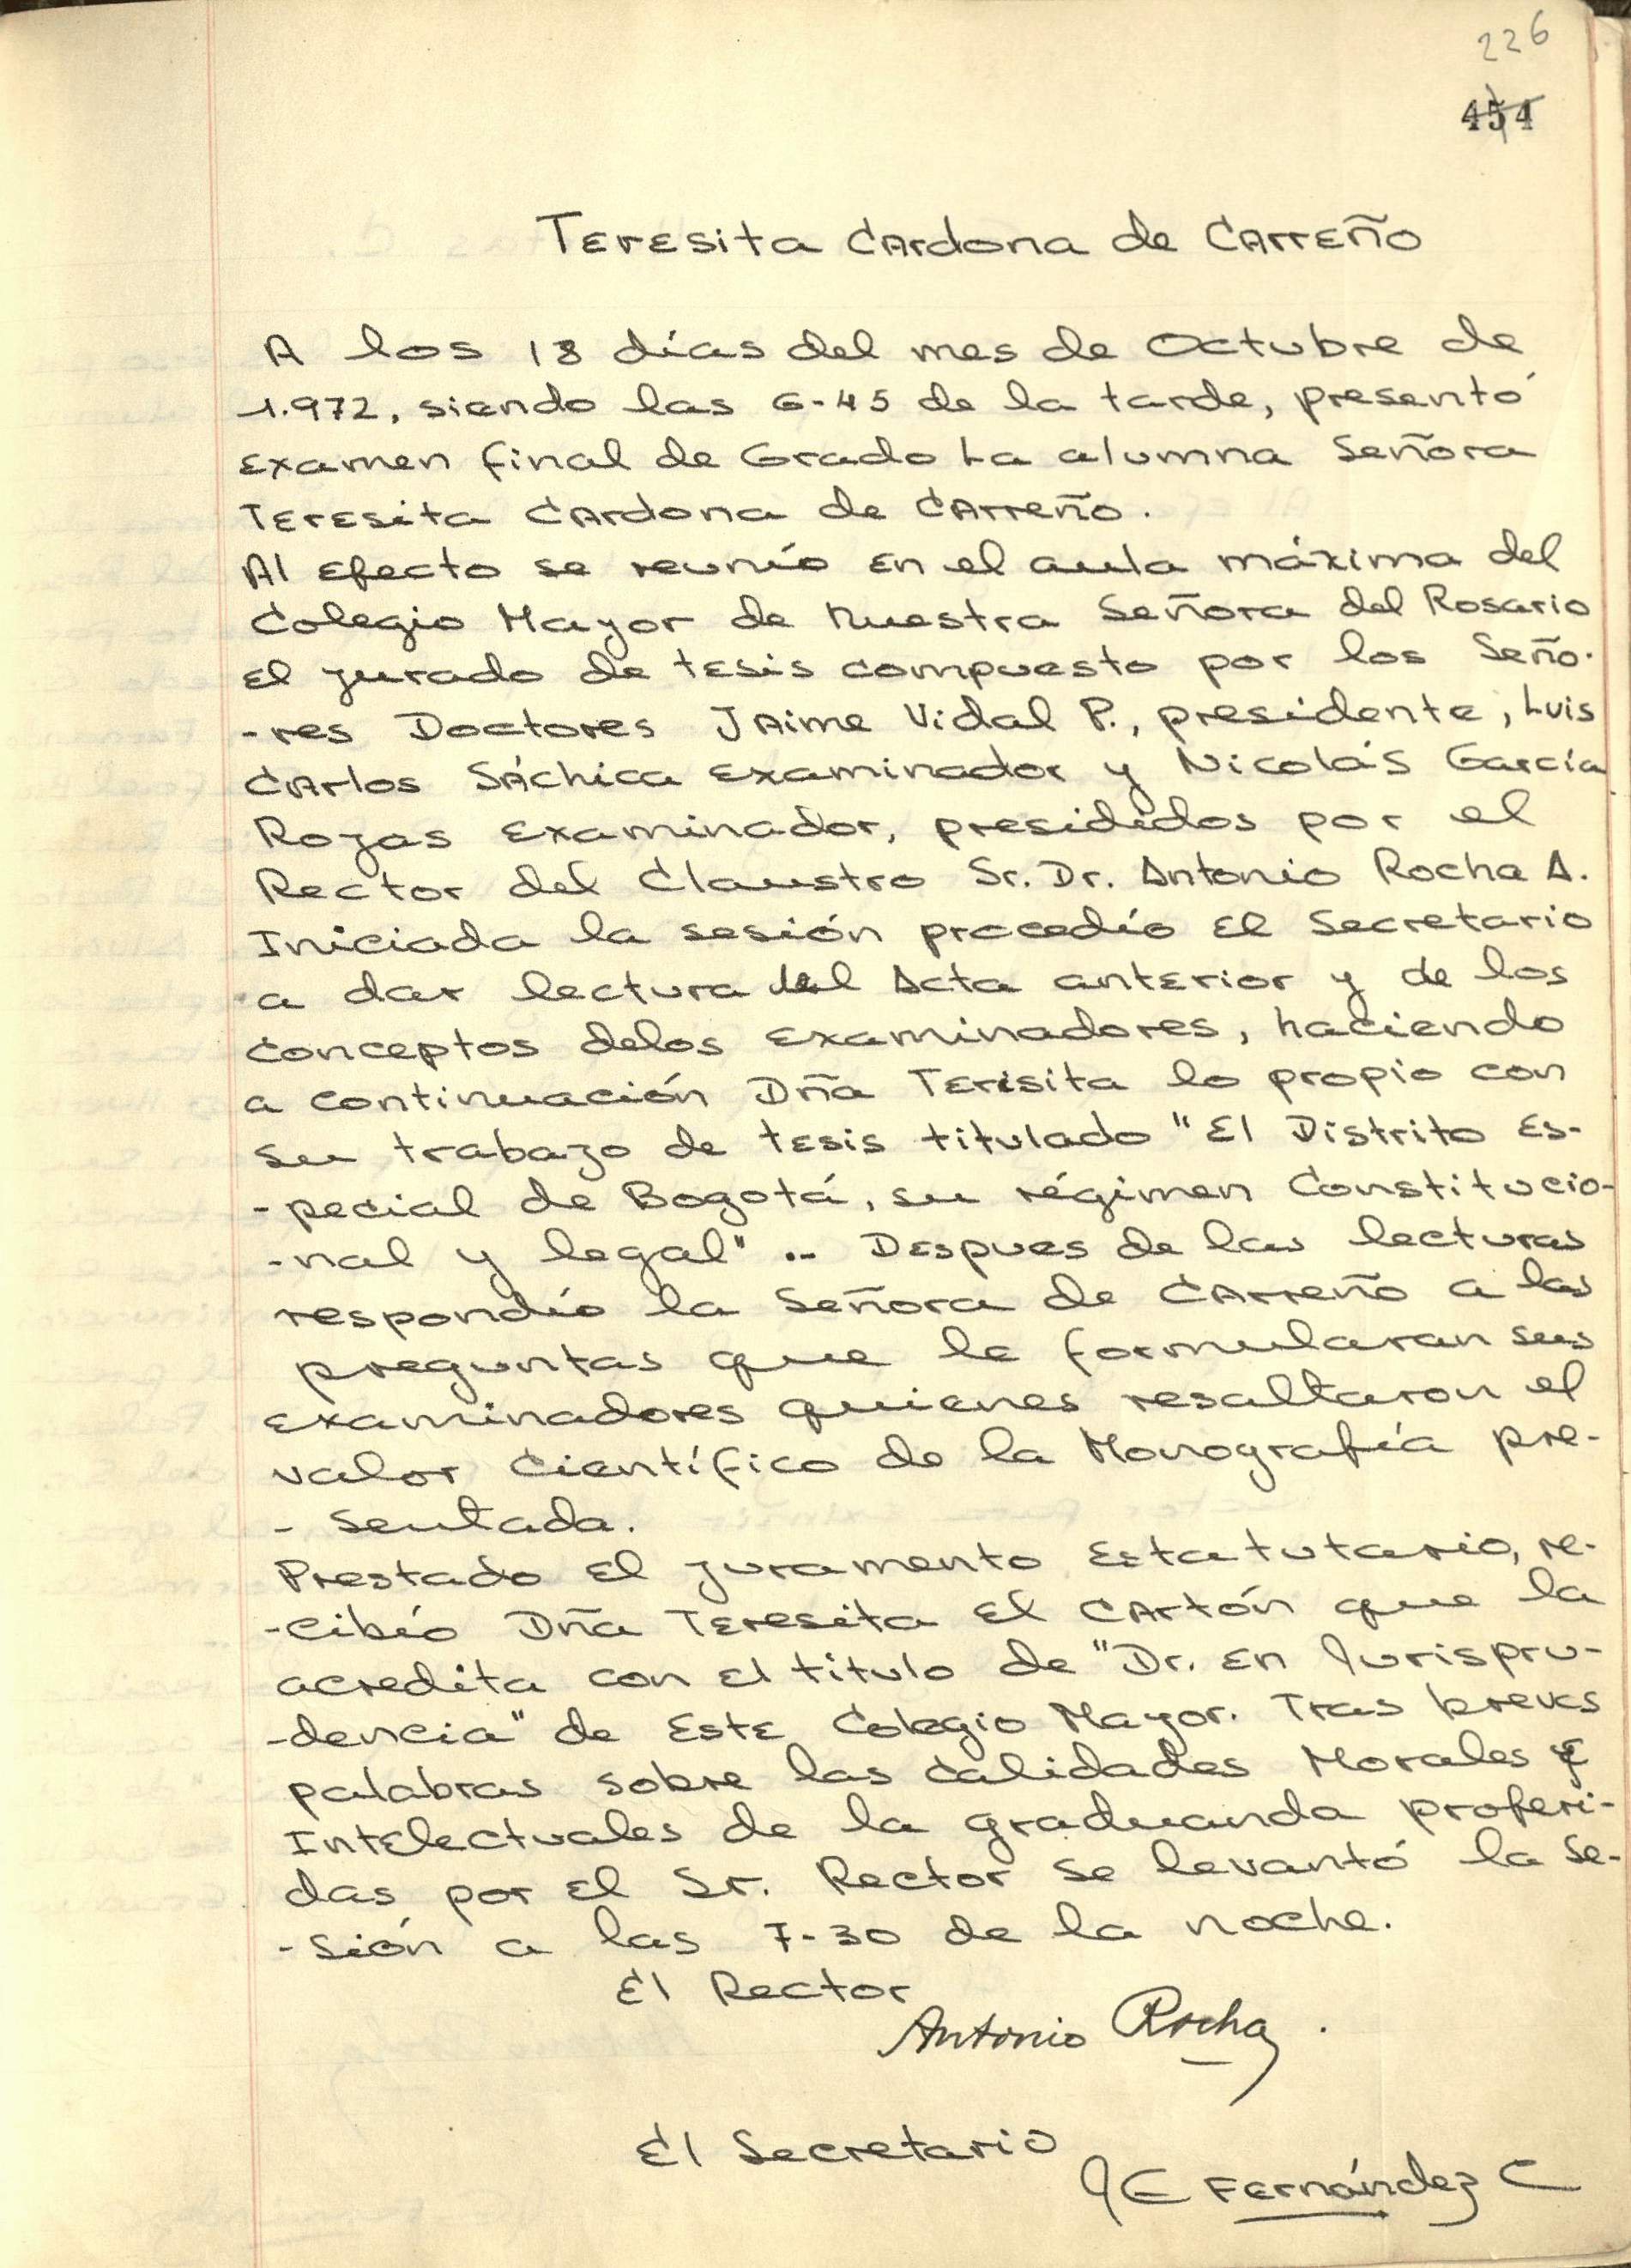 Acta de grado de Teresita Cardona, 1972. AHUR, Volumen 785, folio 226 recto.